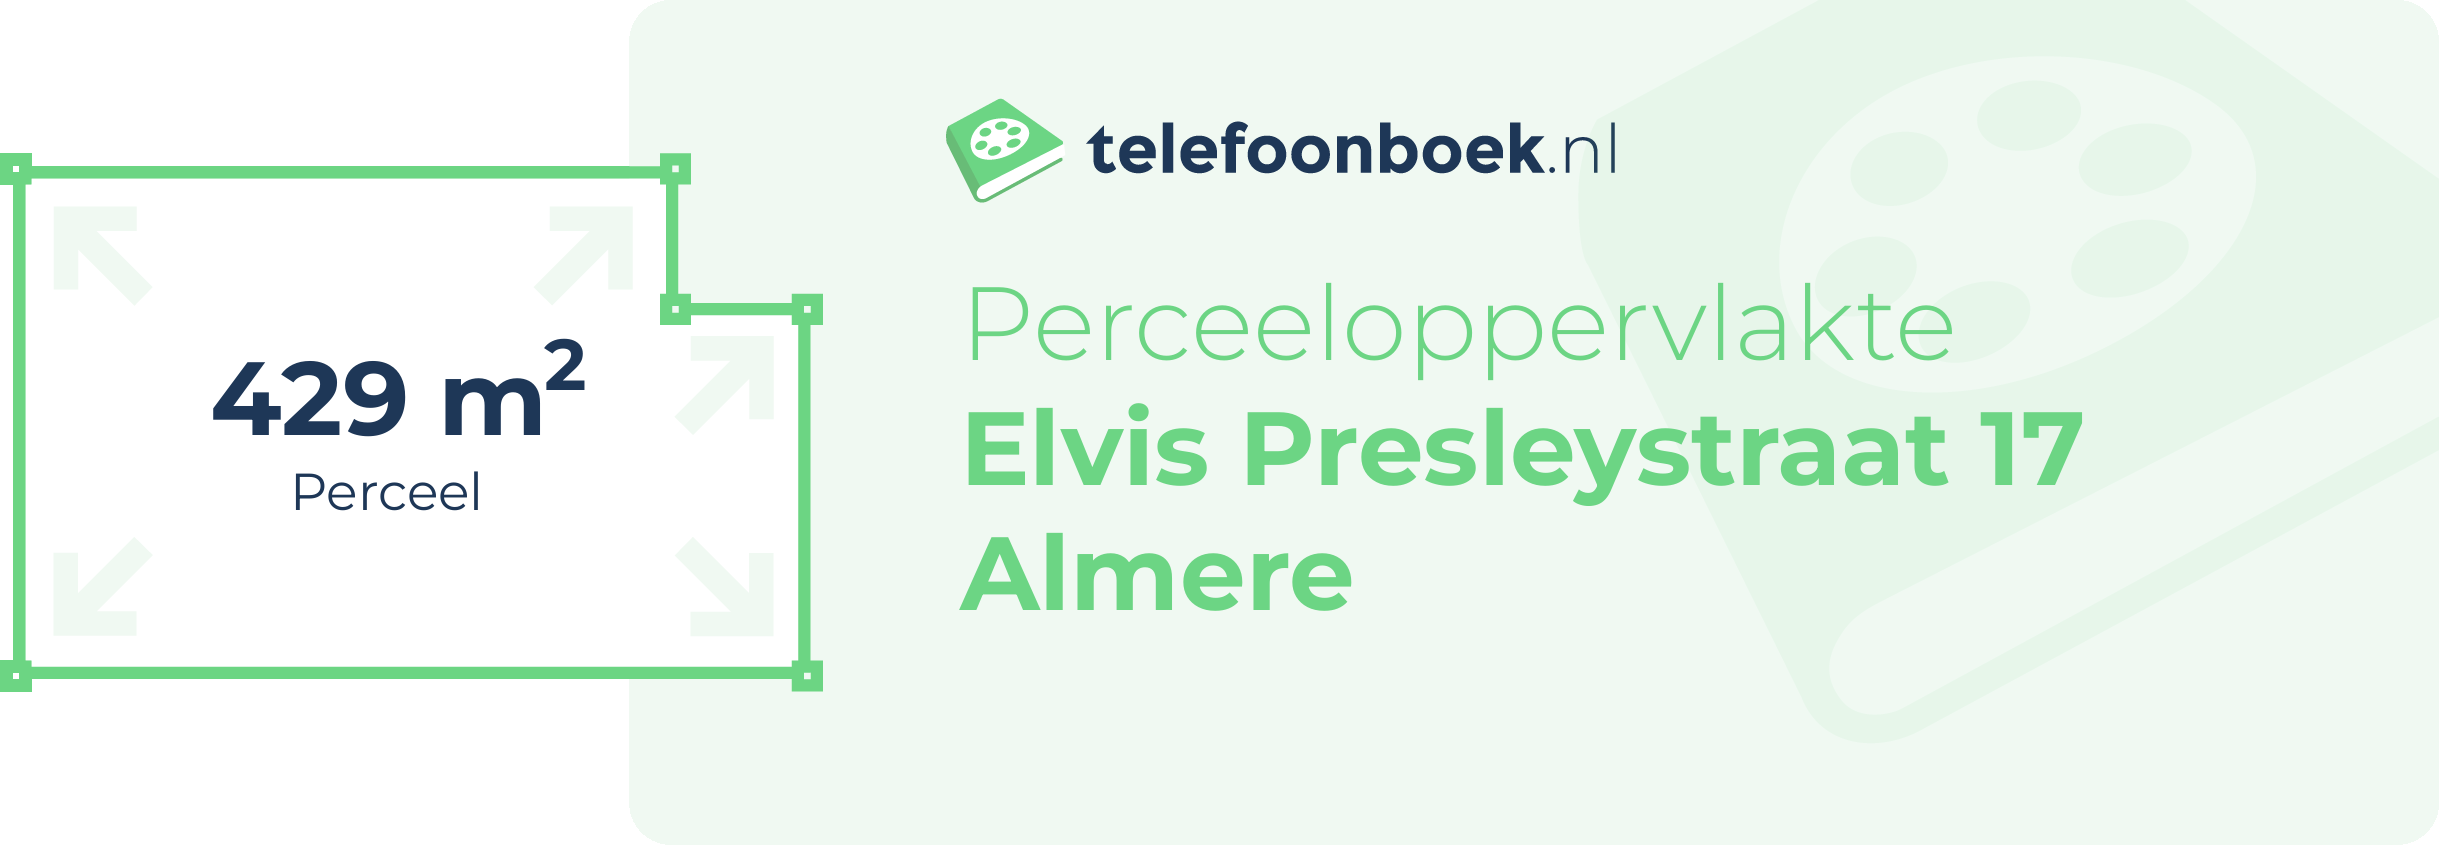 Perceeloppervlakte Elvis Presleystraat 17 Almere